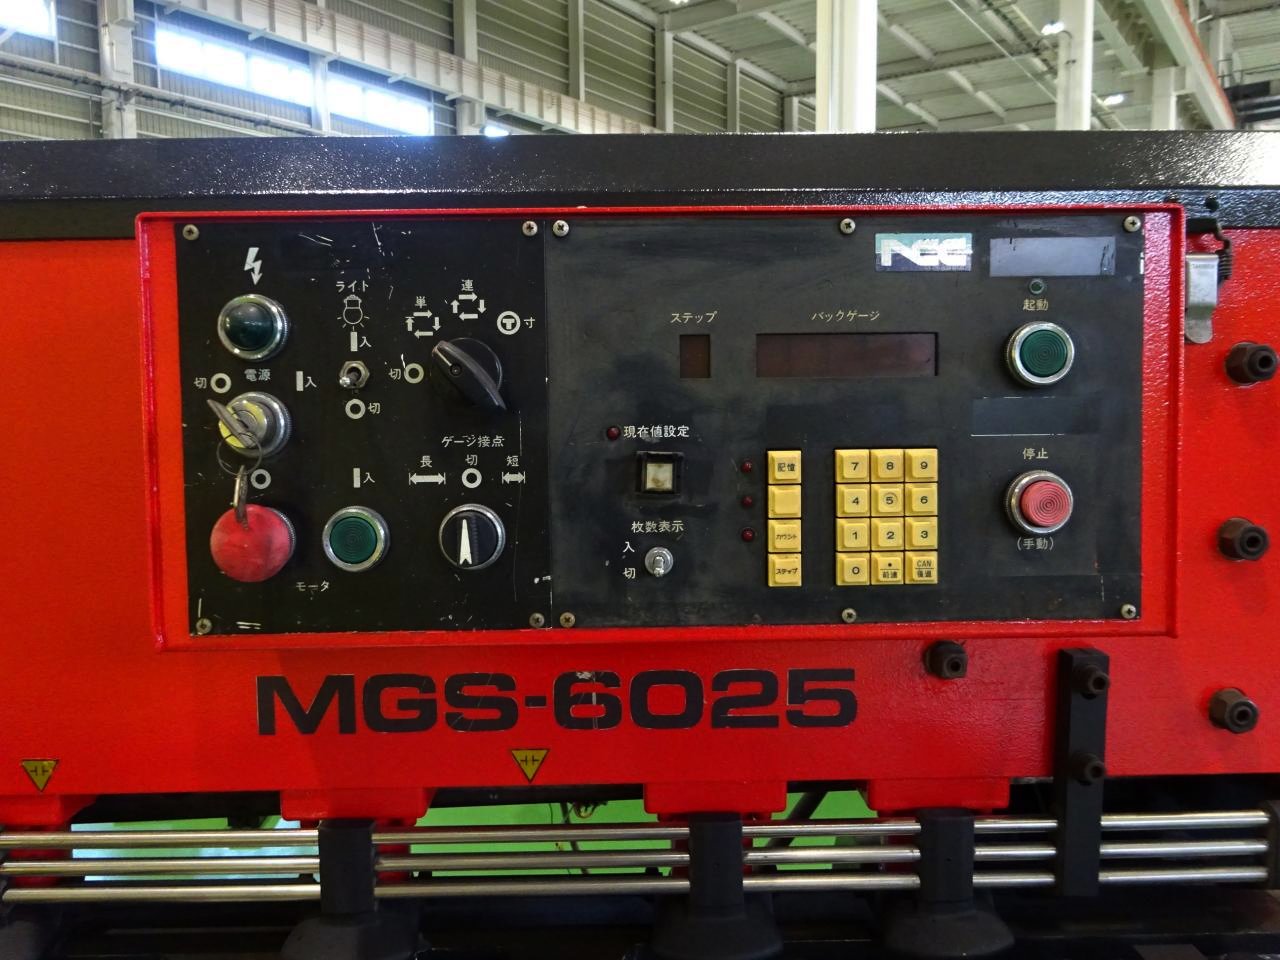 MGS-6025のオートBG操作盤